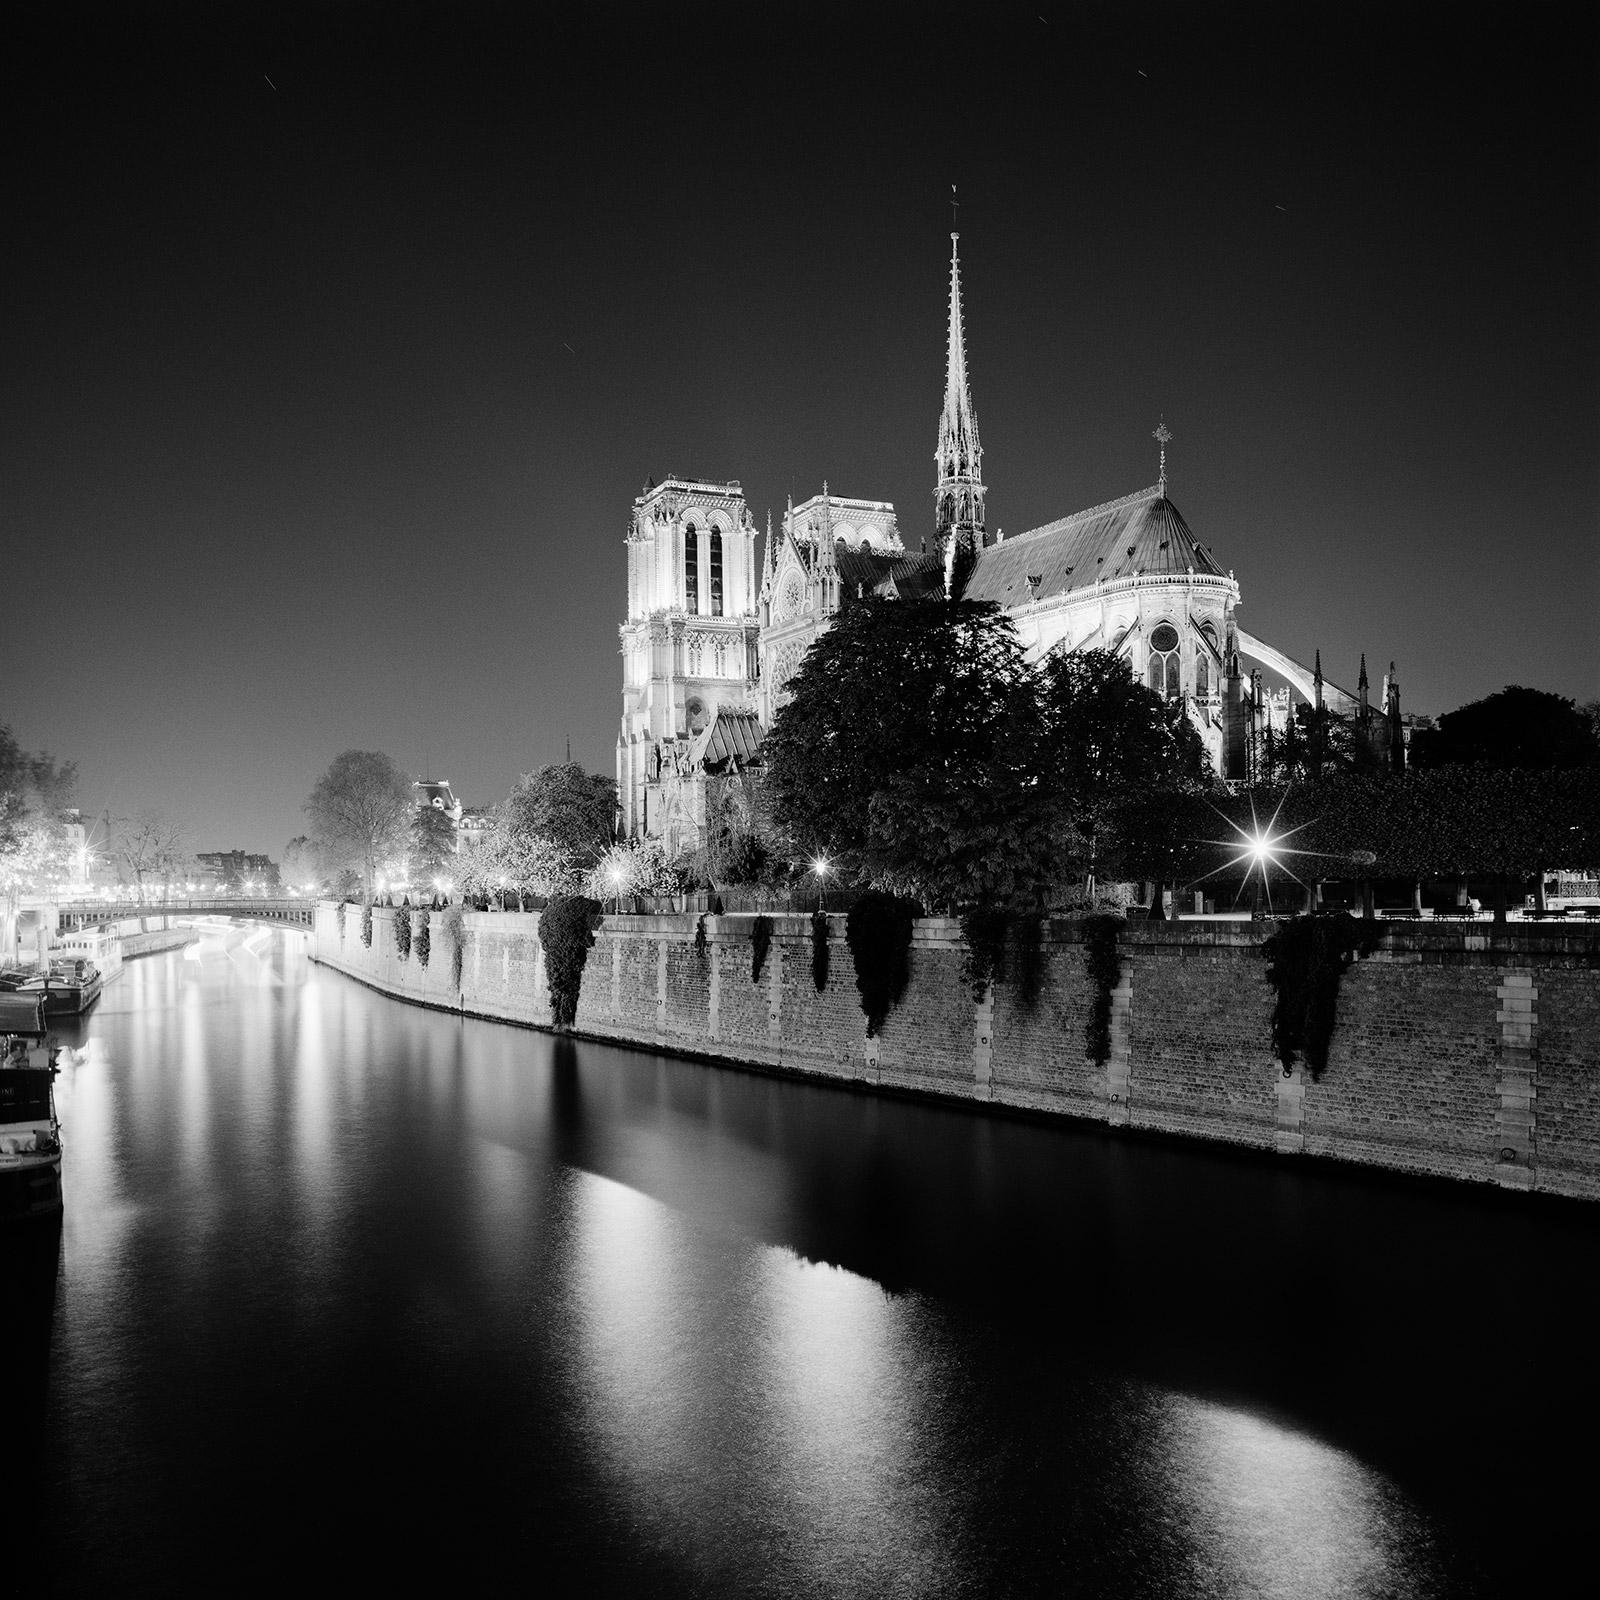 Black and White Photograph Gerald Berghammer - Cathédrale Notre-Dame Nuit Paris France noir et blanc photographie de paysage urbain